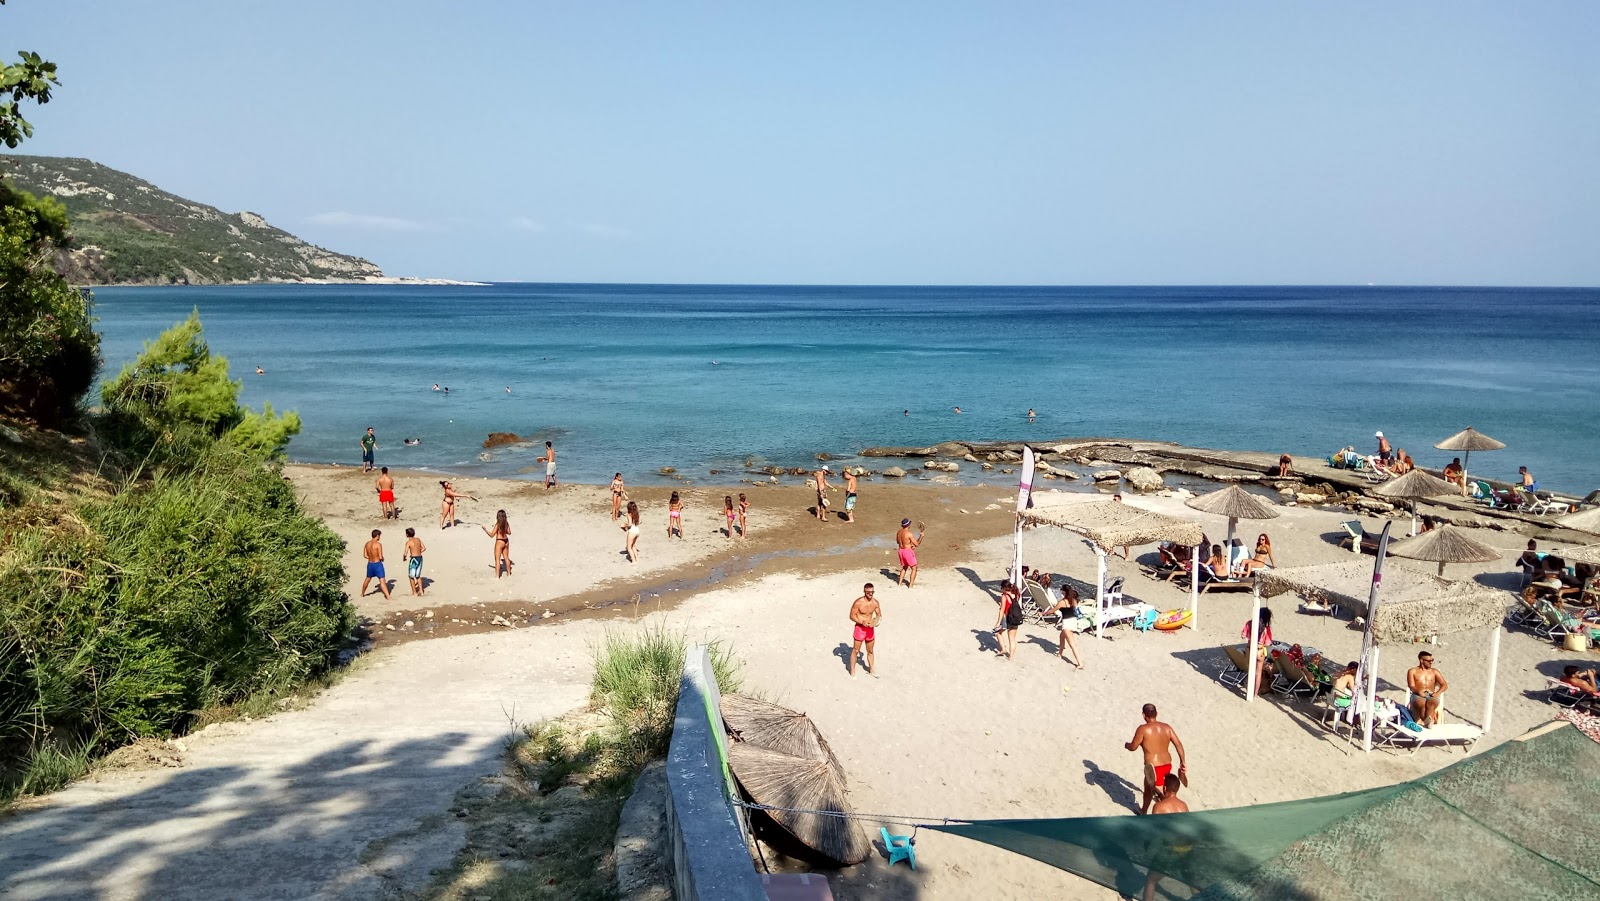 Fotografie cu Soutsini beach cu nivelul de curățenie înalt